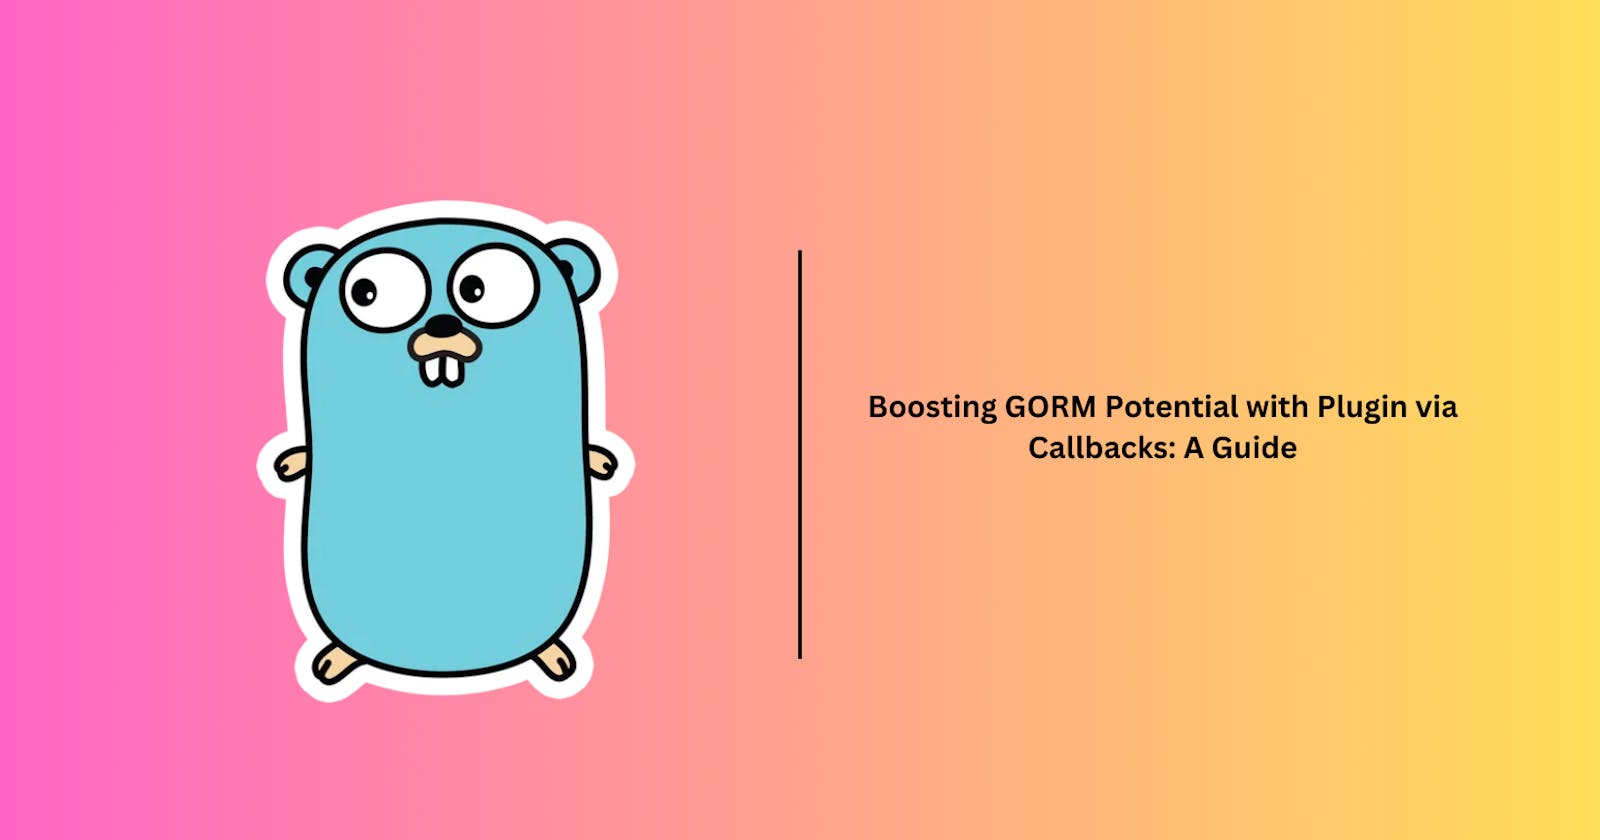 Boosting GORM Potential with Plugin via Callbacks: A Guide